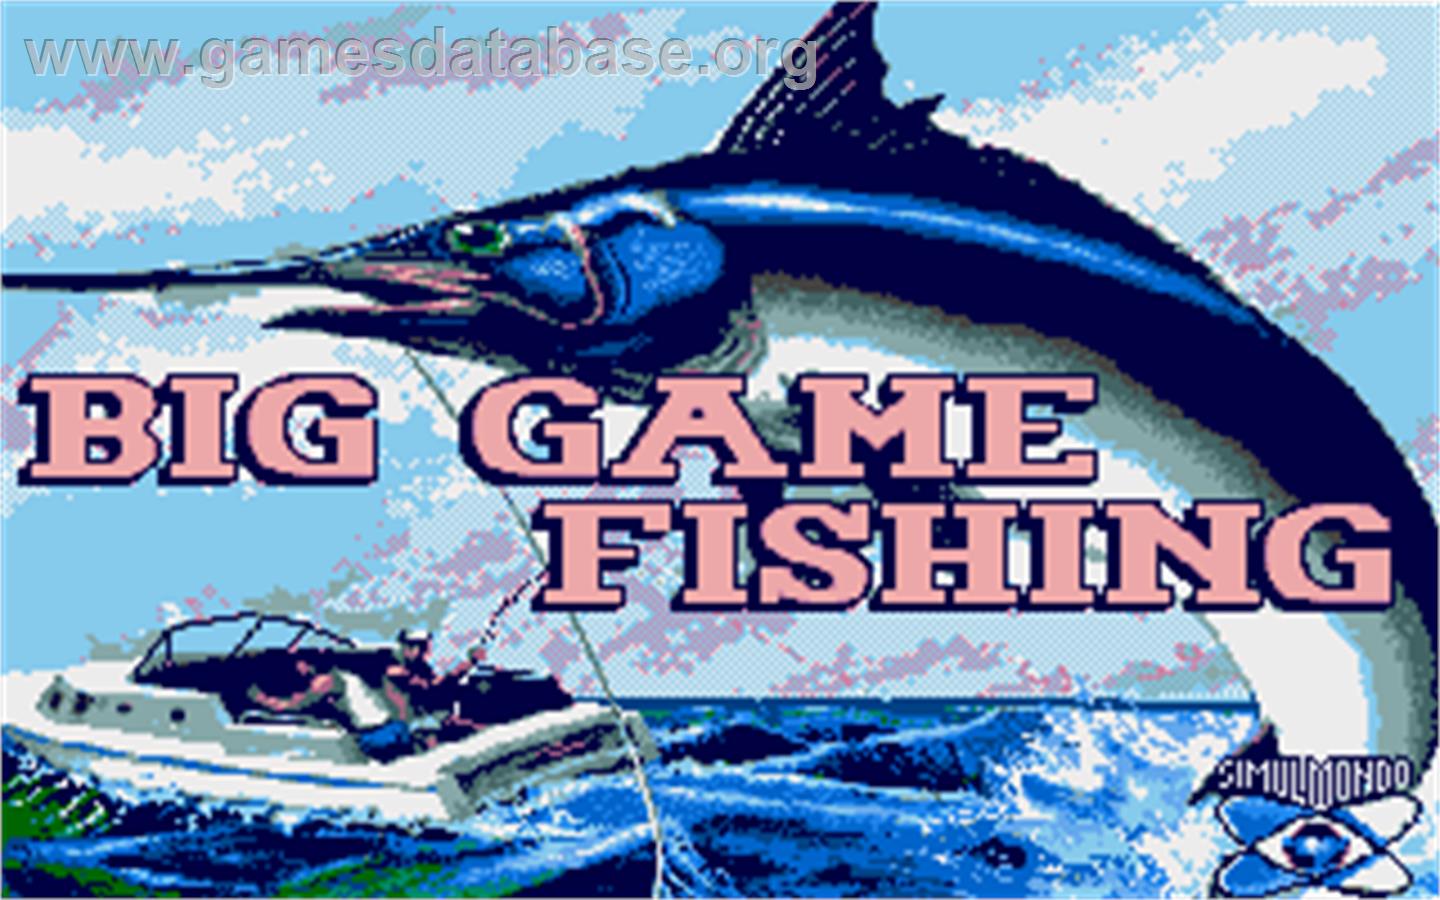 Big Game Fishing - Atari ST - Artwork - Title Screen